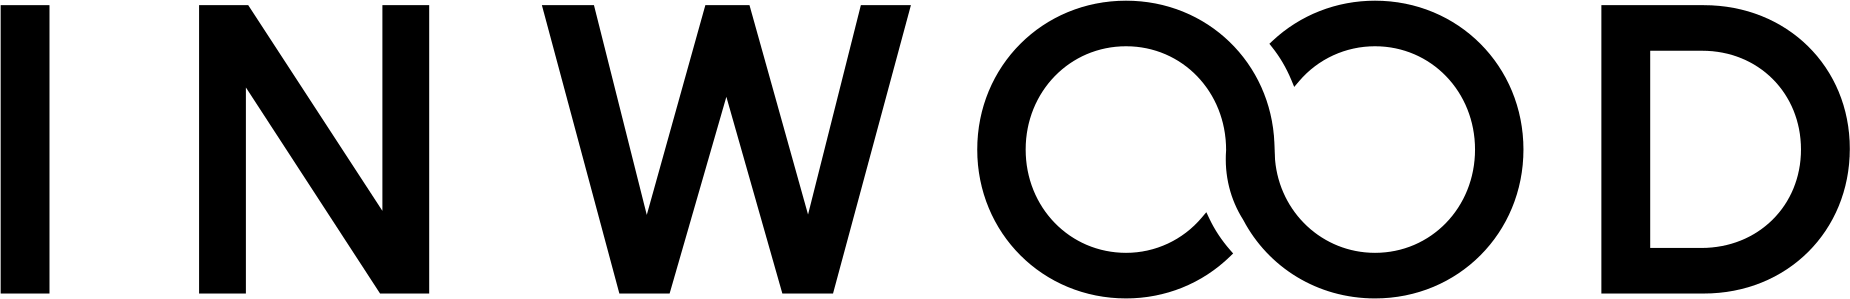 Inwood logo